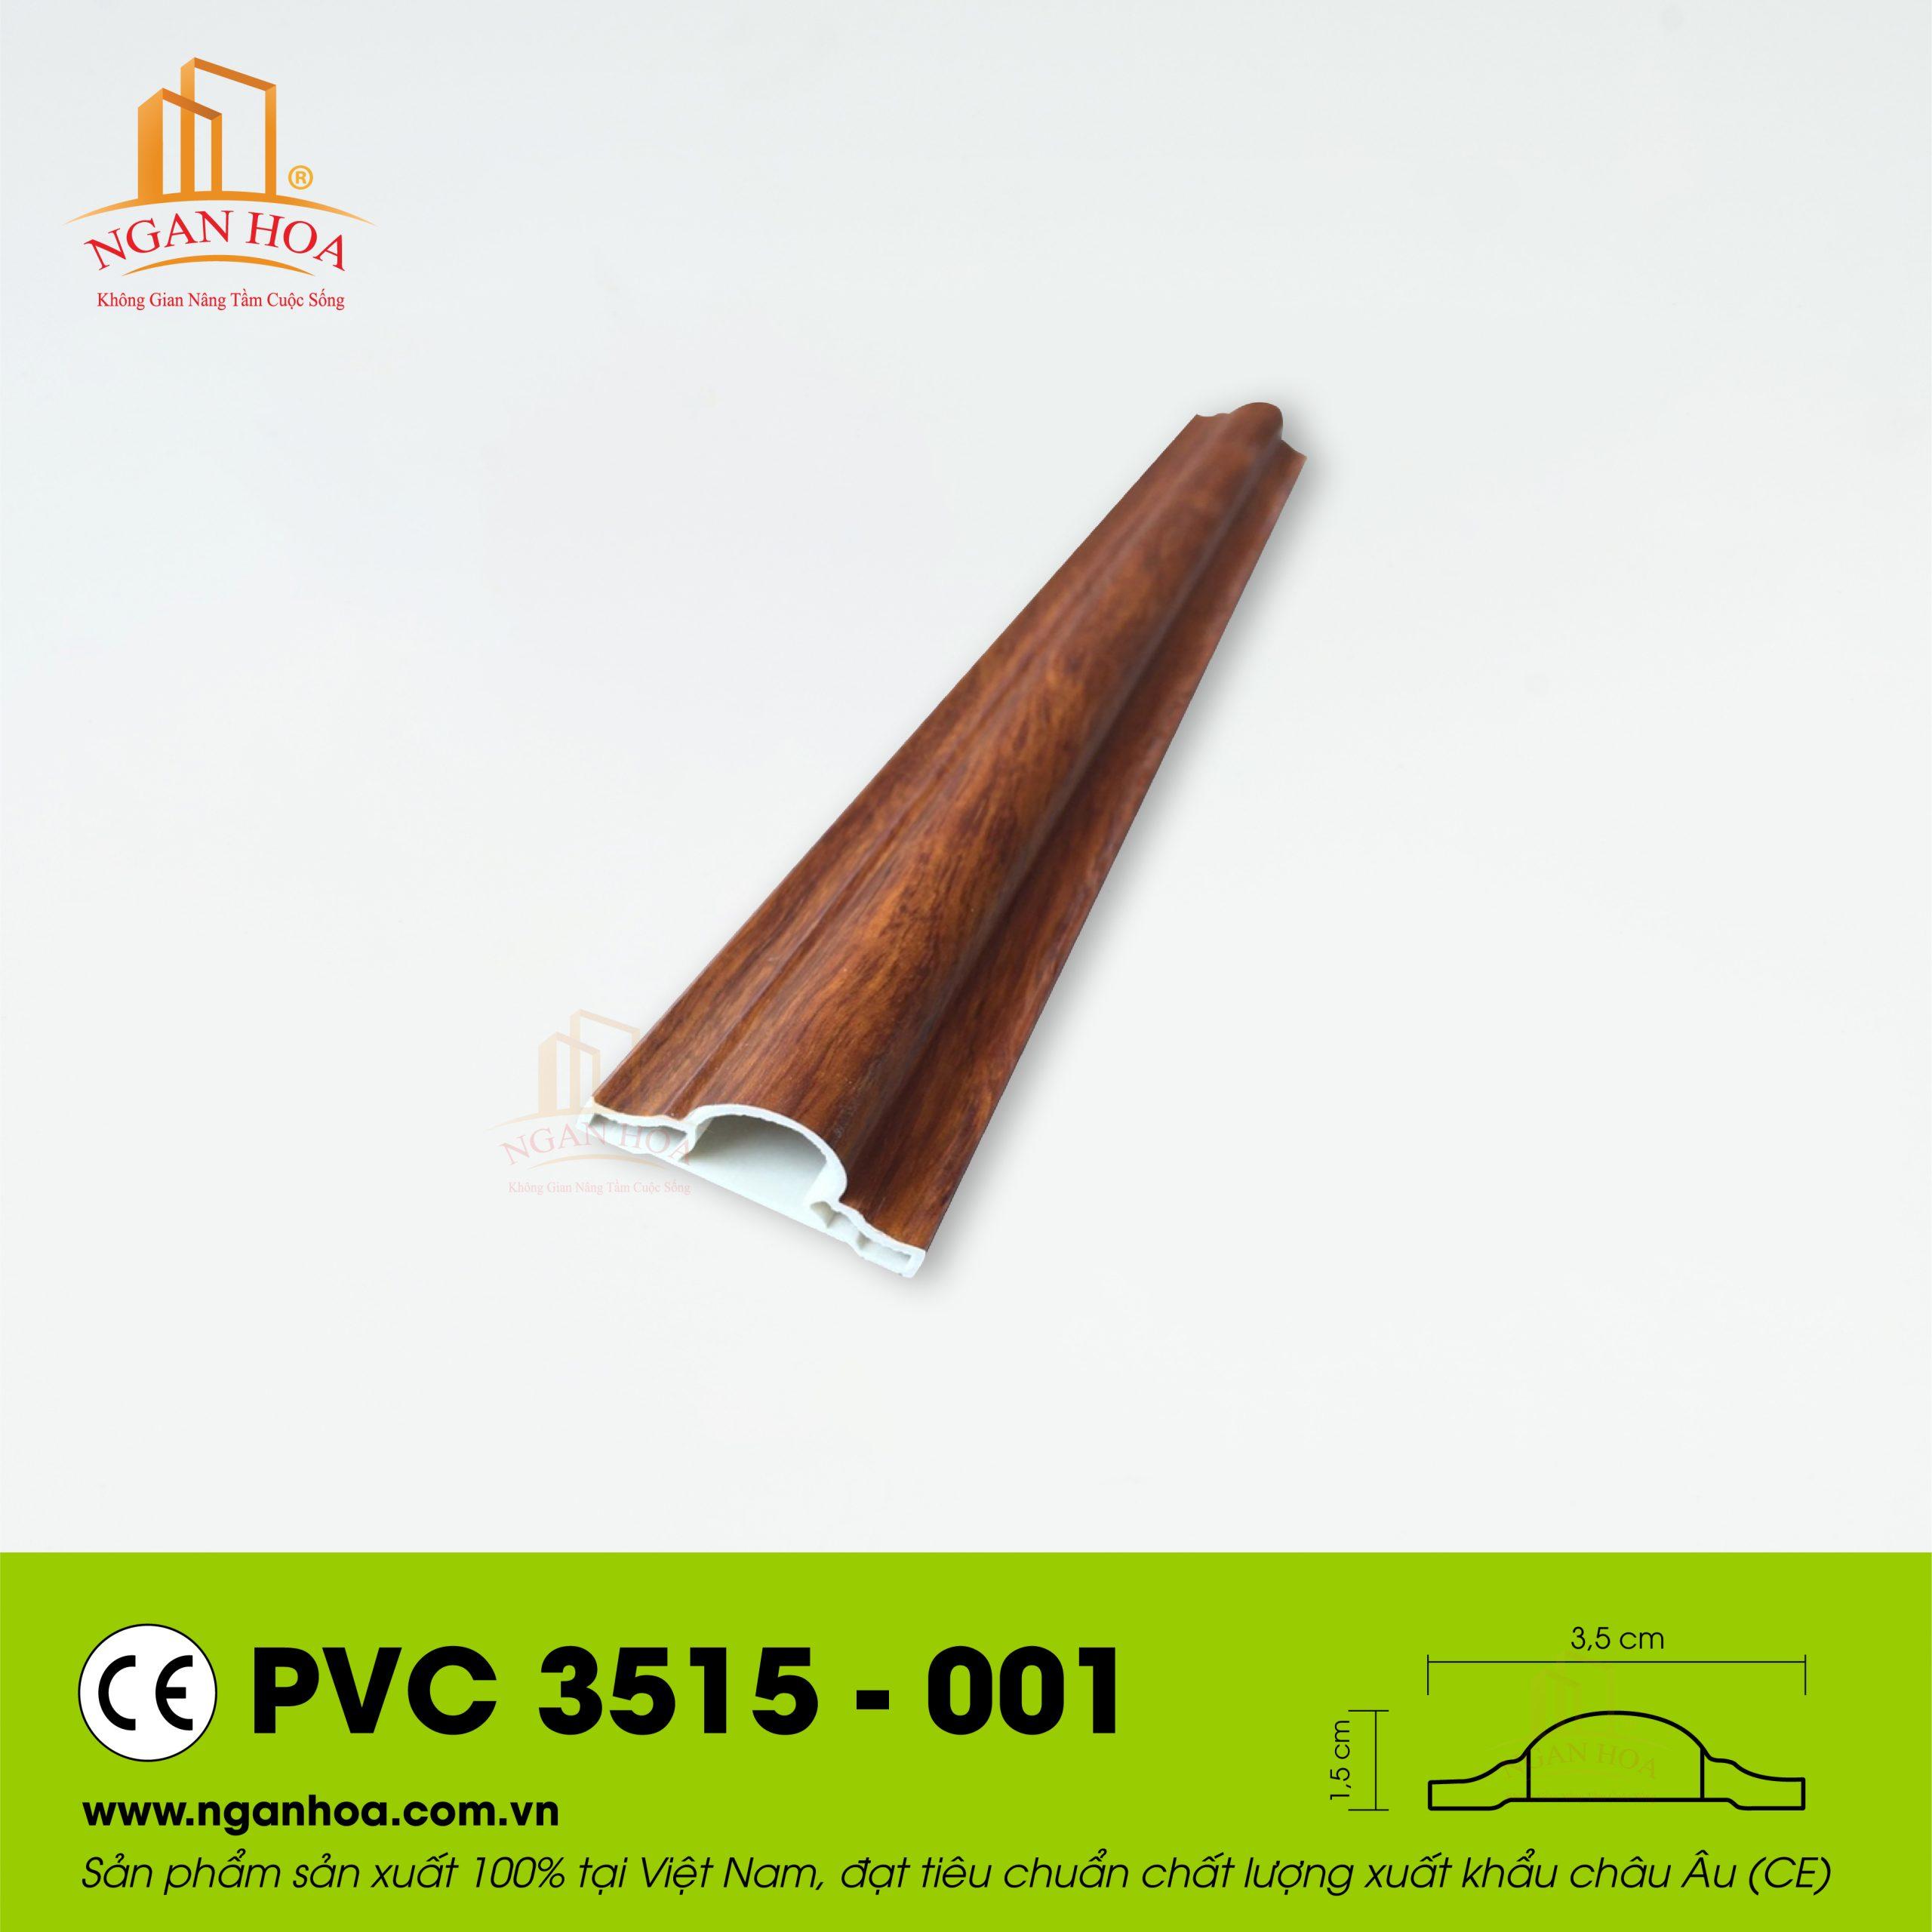 PVC 3515 001 scaled